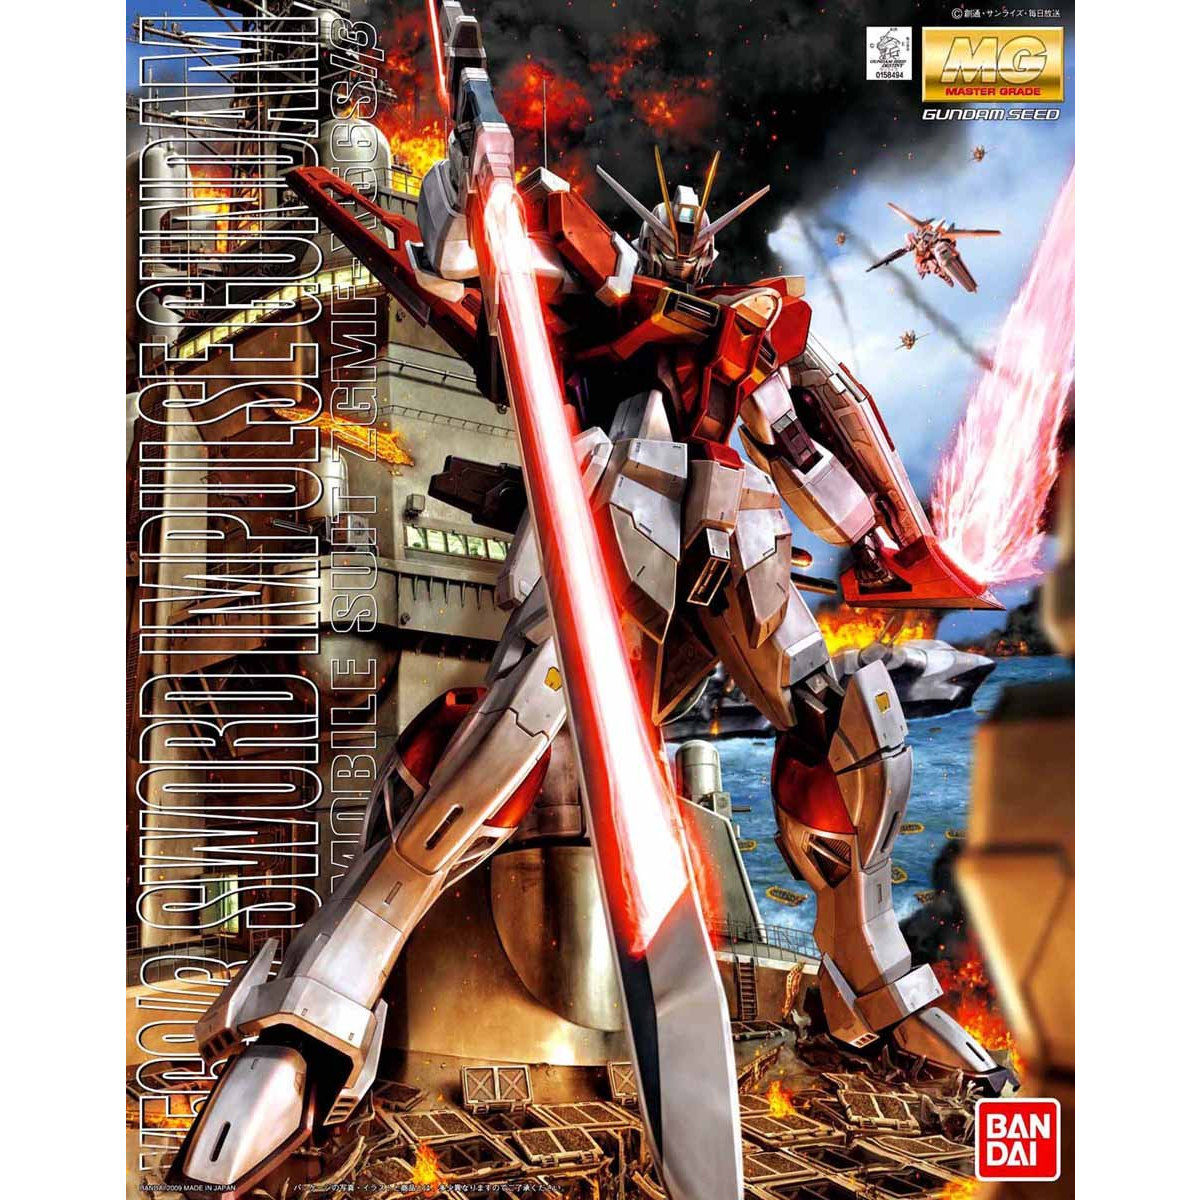 Bandai 1/100 MG Sword Impulse Gundam Plastic Model Kit